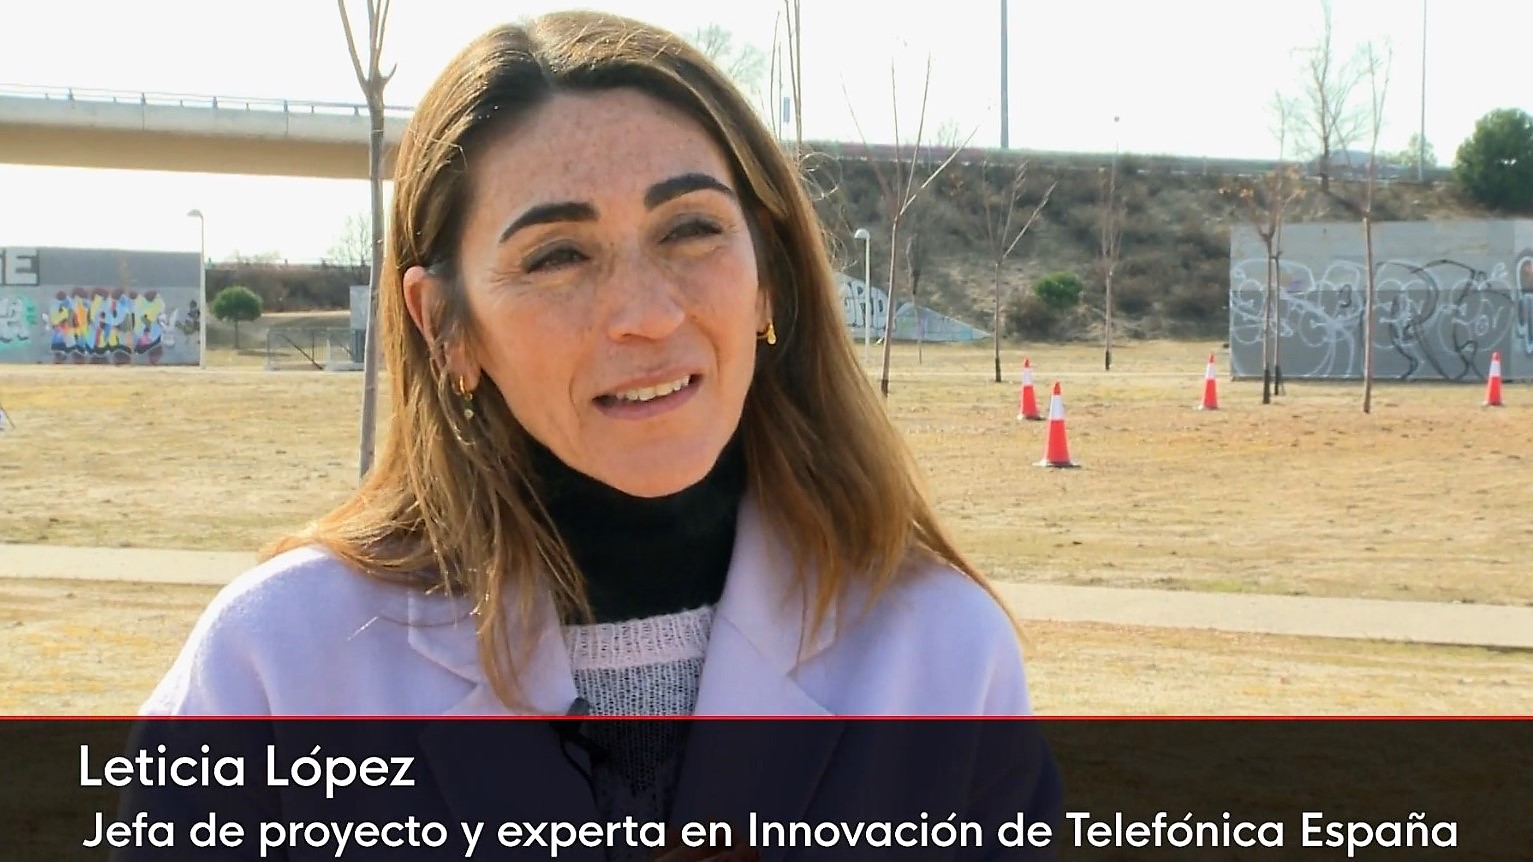 La mensajería por dron cada vez más cerca en España